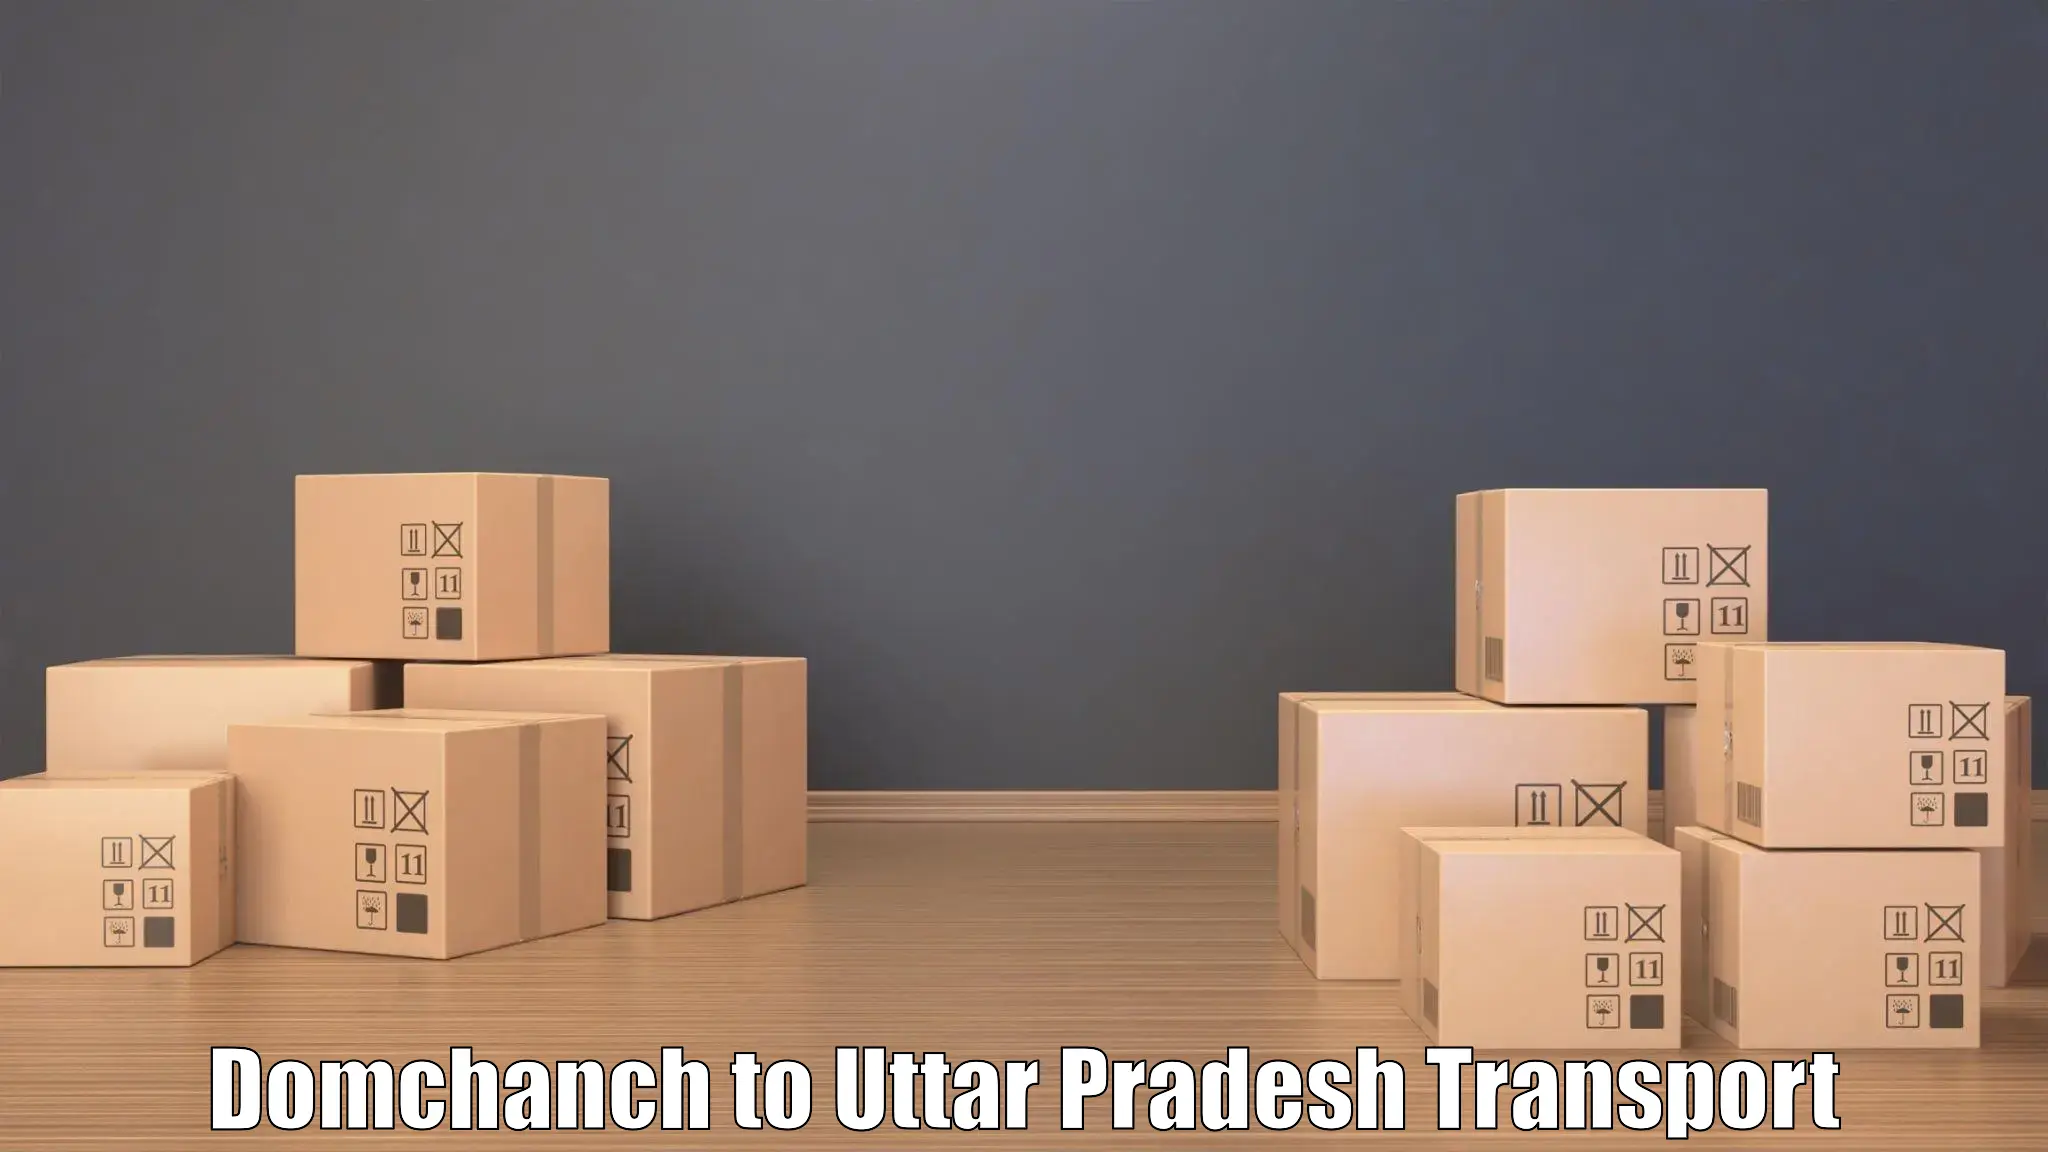 Container transport service Domchanch to Uttar Pradesh